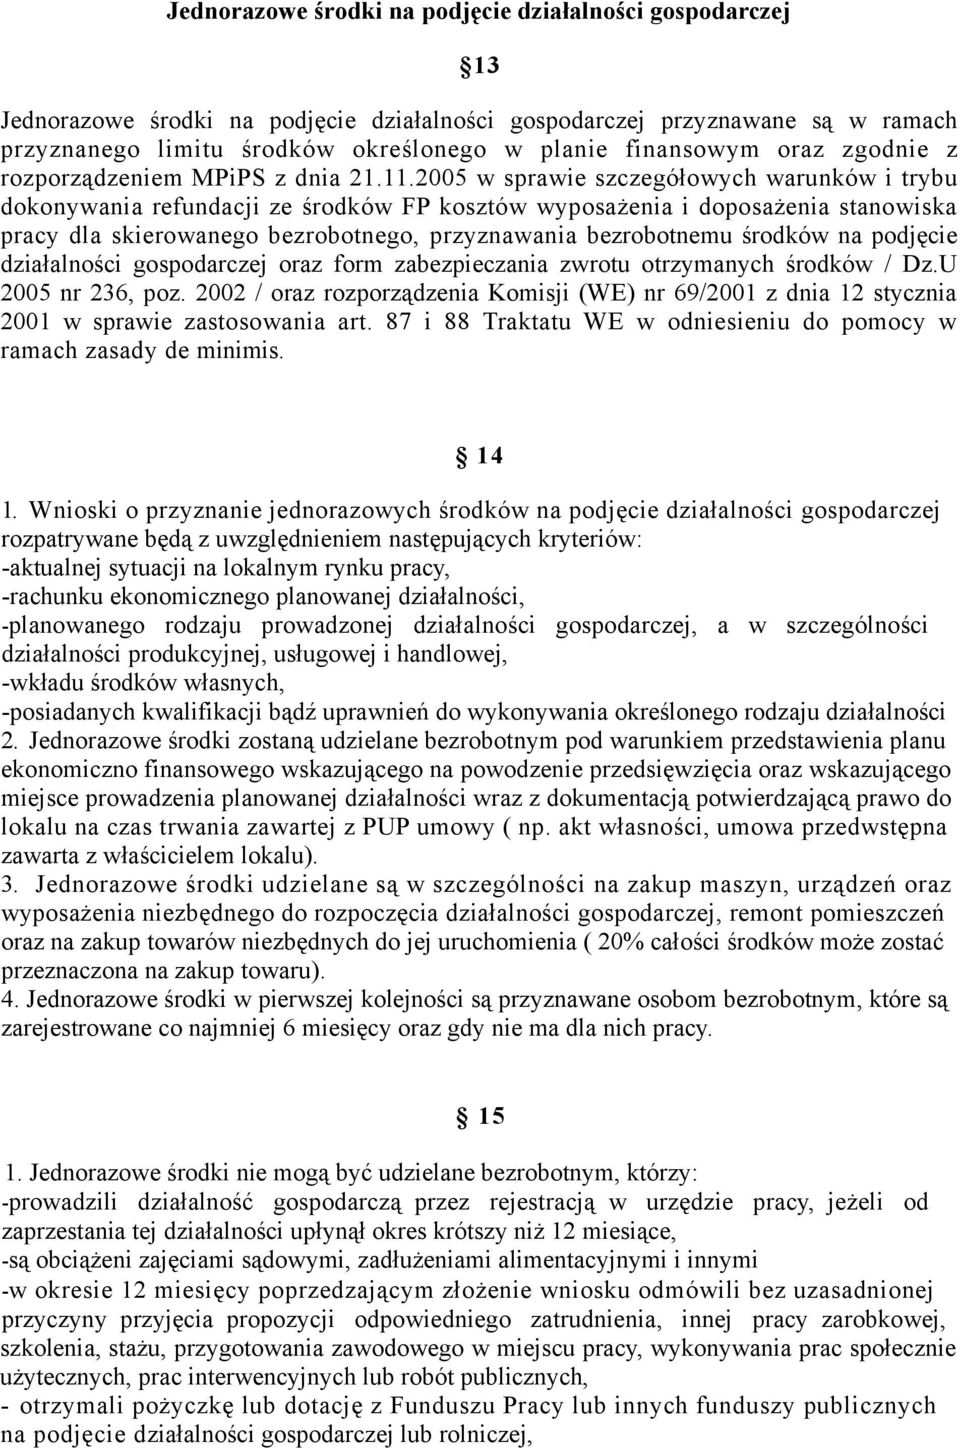 2005 w sprawie szczegółowych warunków i trybu dokonywania refundacji ze środków FP kosztów wyposażenia i doposażenia stanowiska pracy dla skierowanego bezrobotnego, przyznawania bezrobotnemu środków